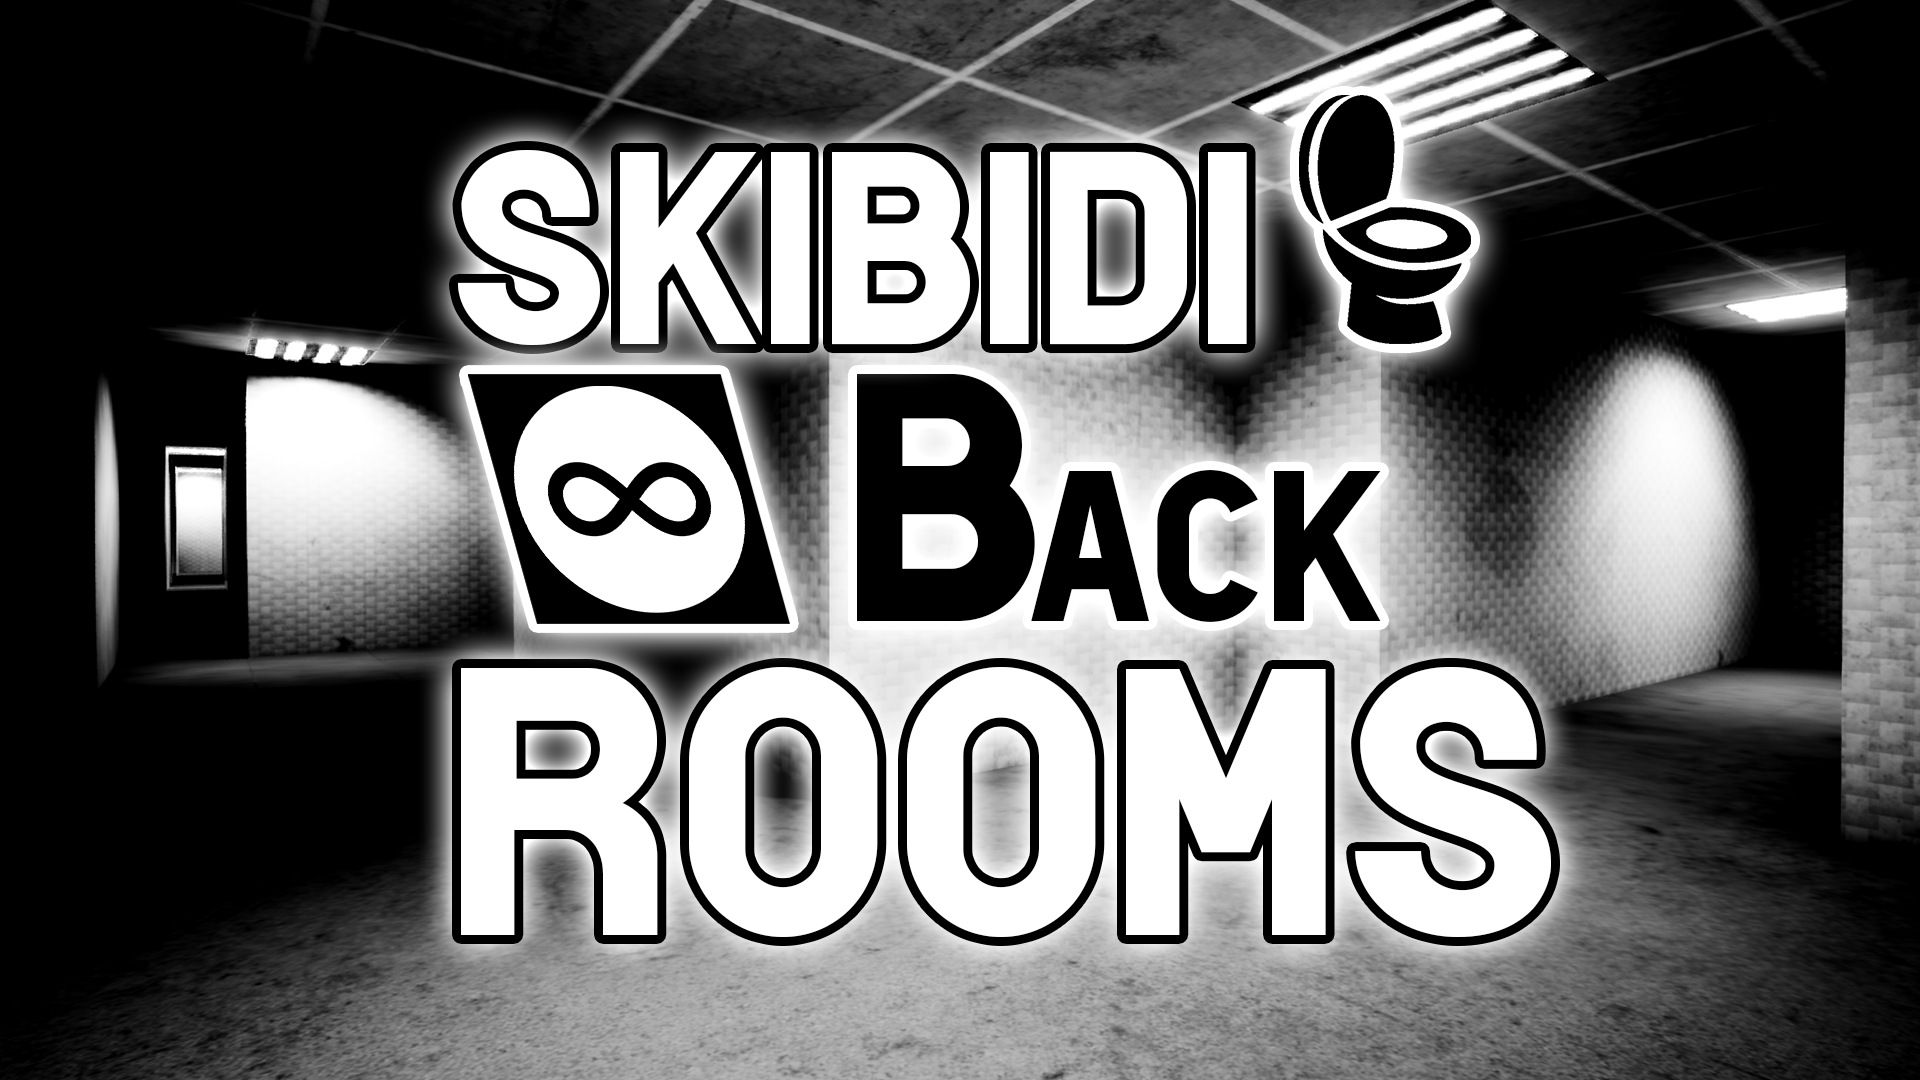 SKIBIDI BACKROOMS on Steam